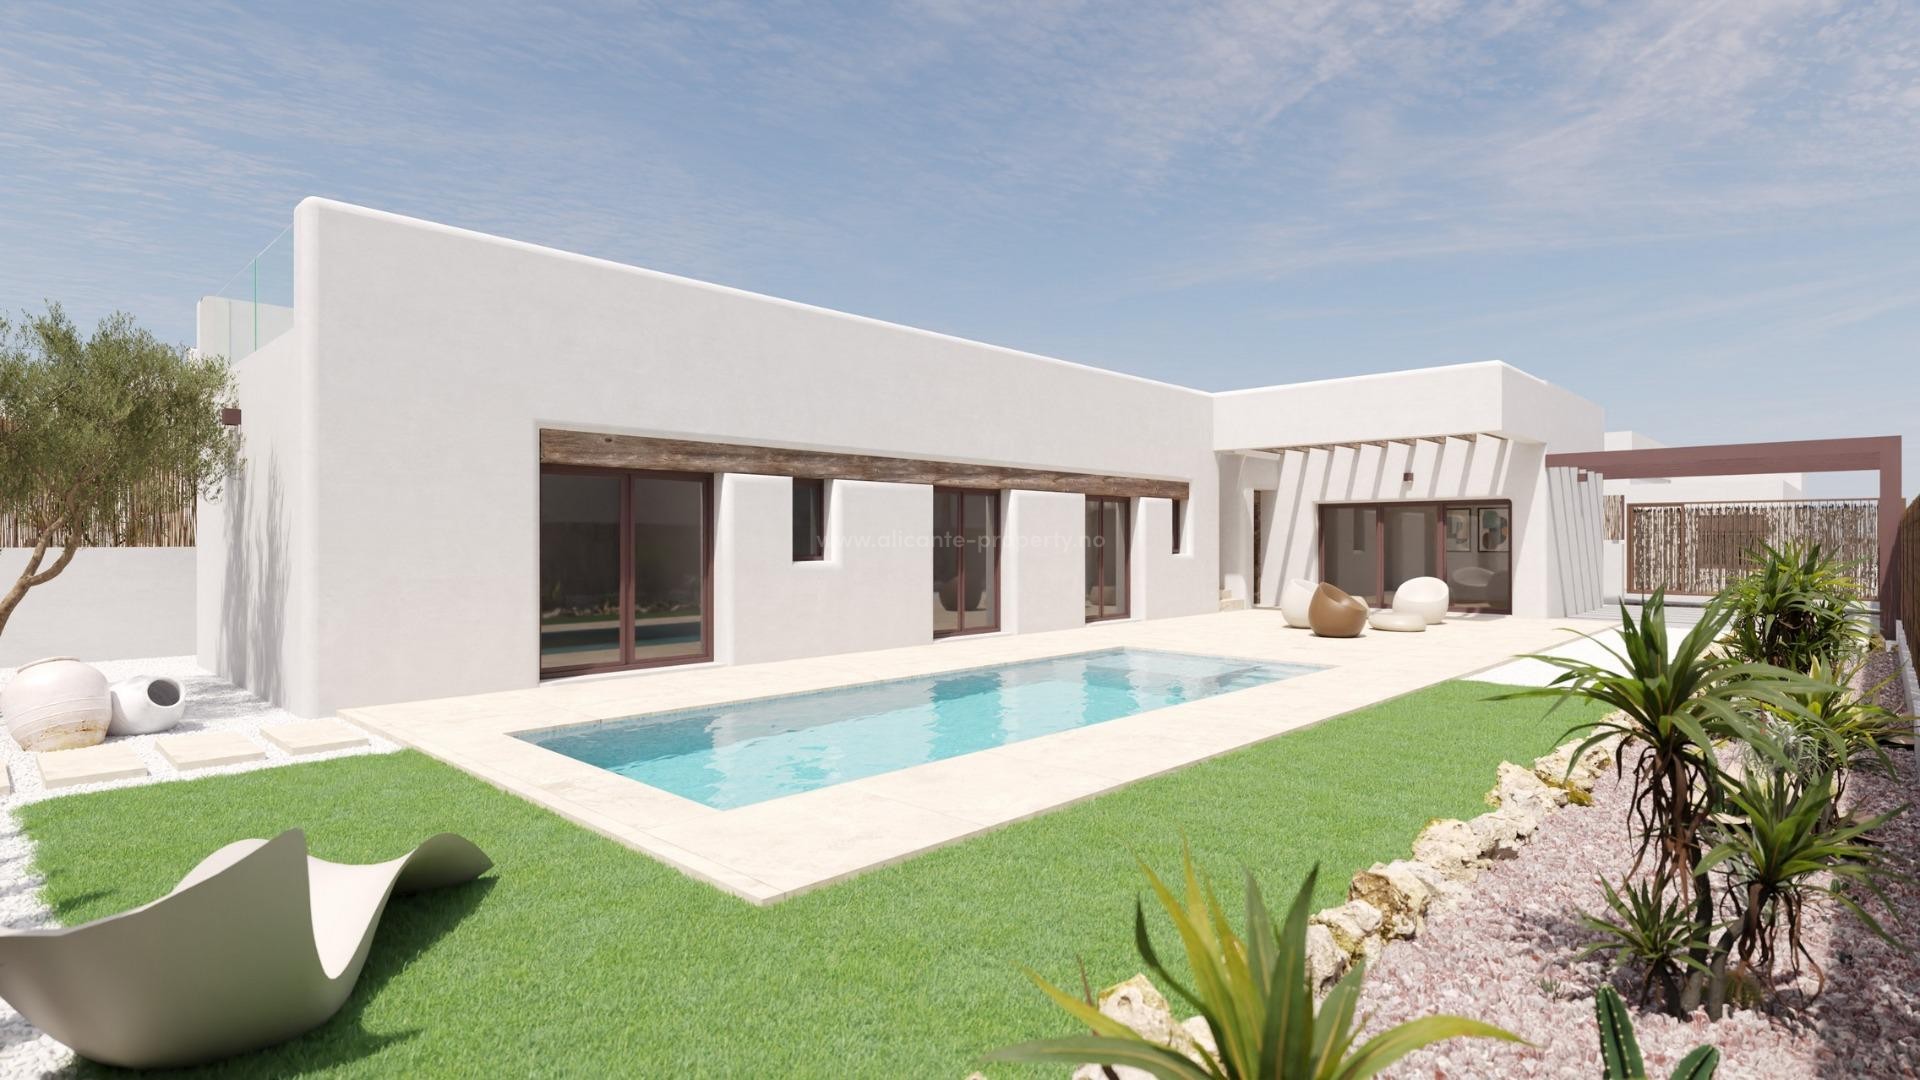 Helt nye luksus-villaer/hus i La Finca Golf, 3 soverom, 2 bad, privat basseng og stort uteområdet, innendørs parkeringsplass